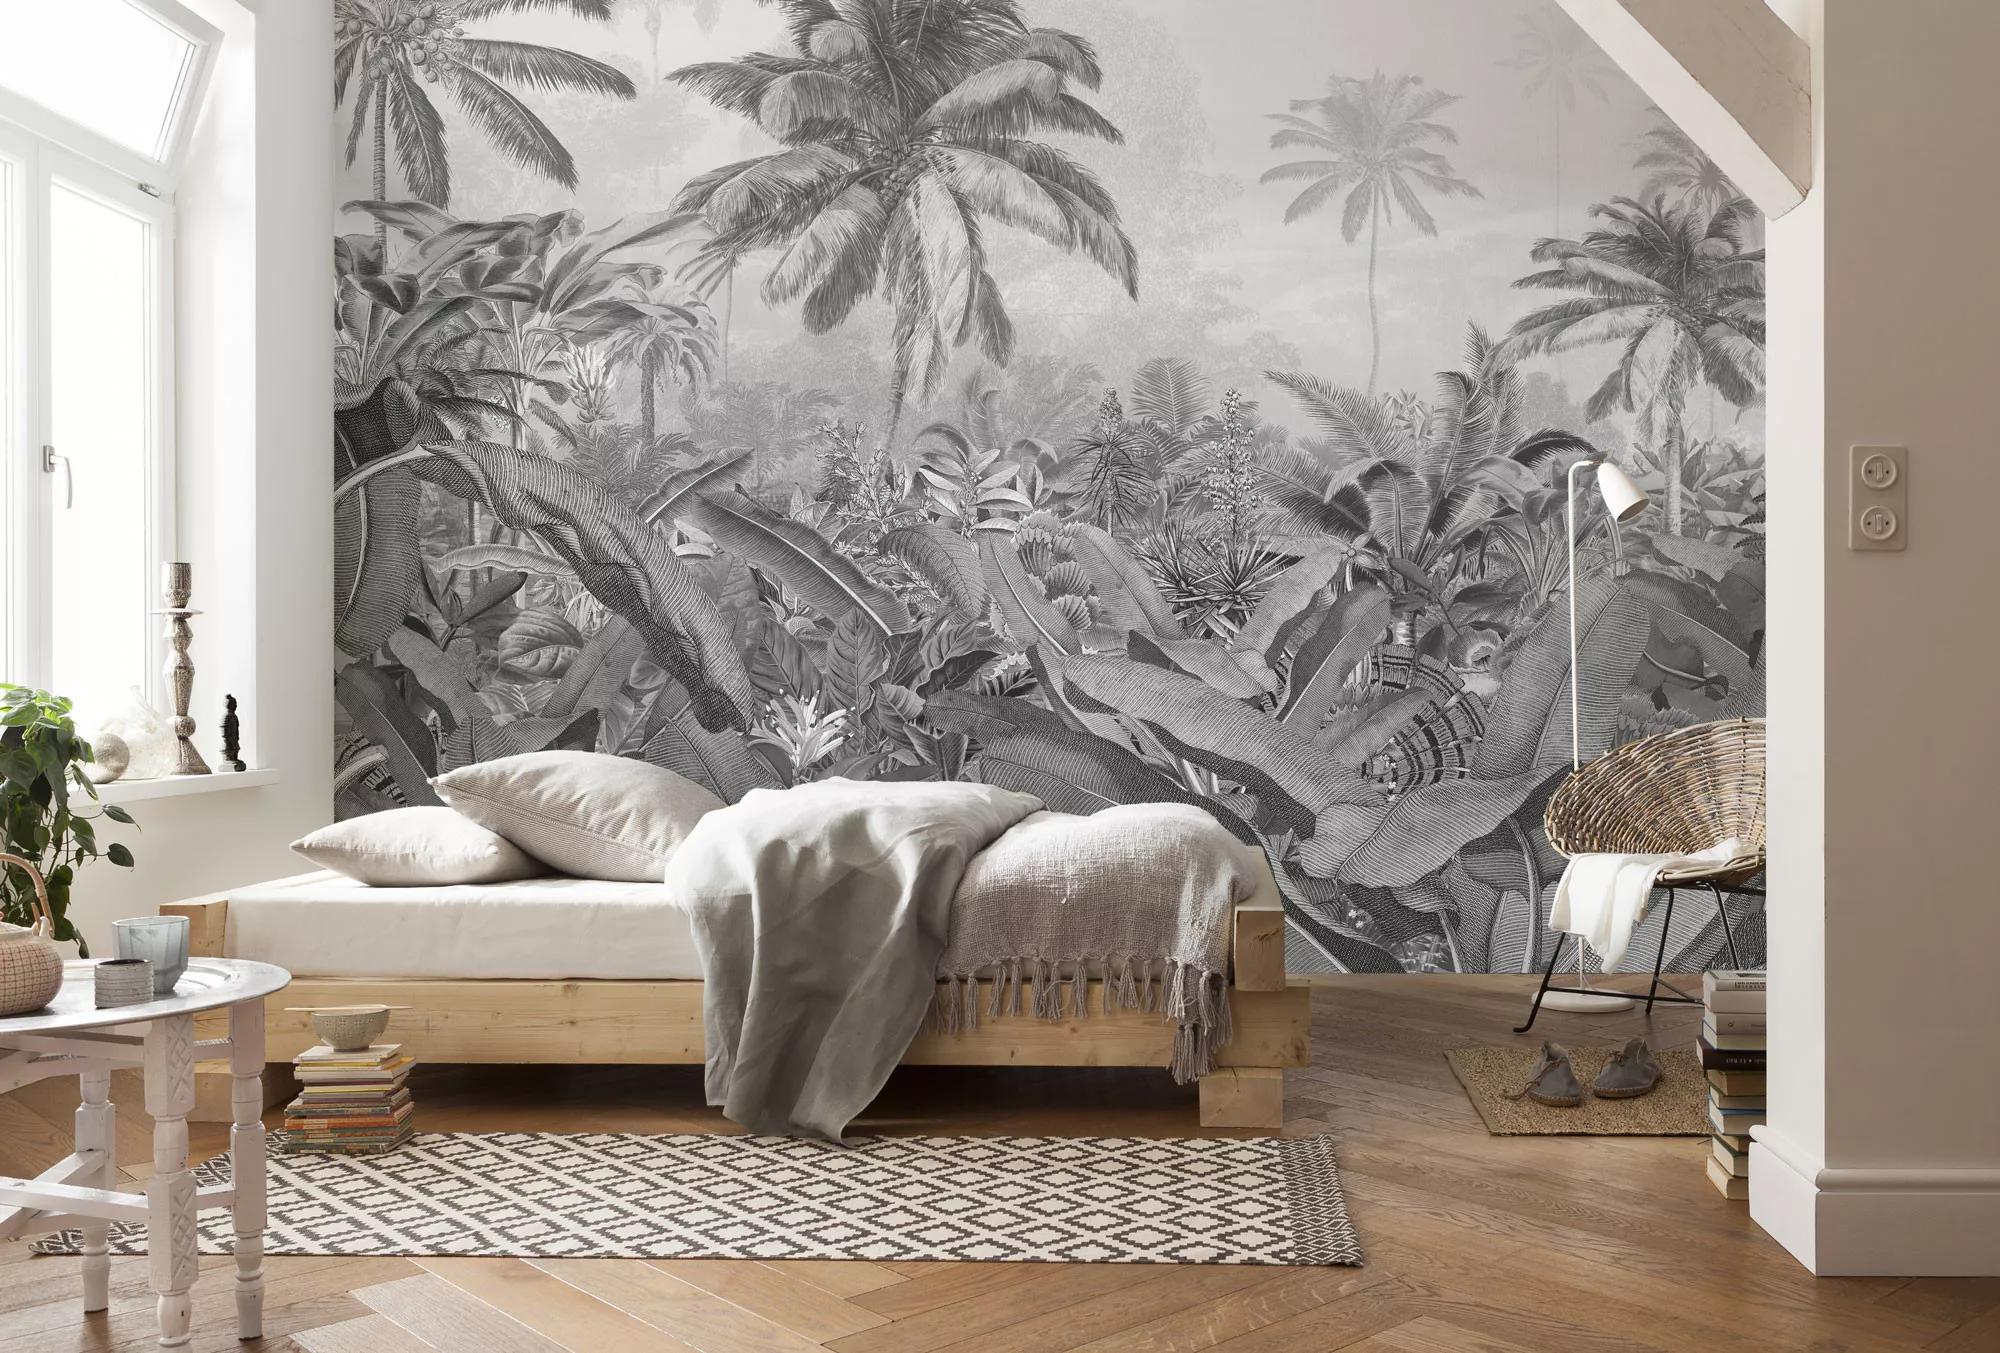 Fekete fehér modern vlies dzsungel mintás fali poszter